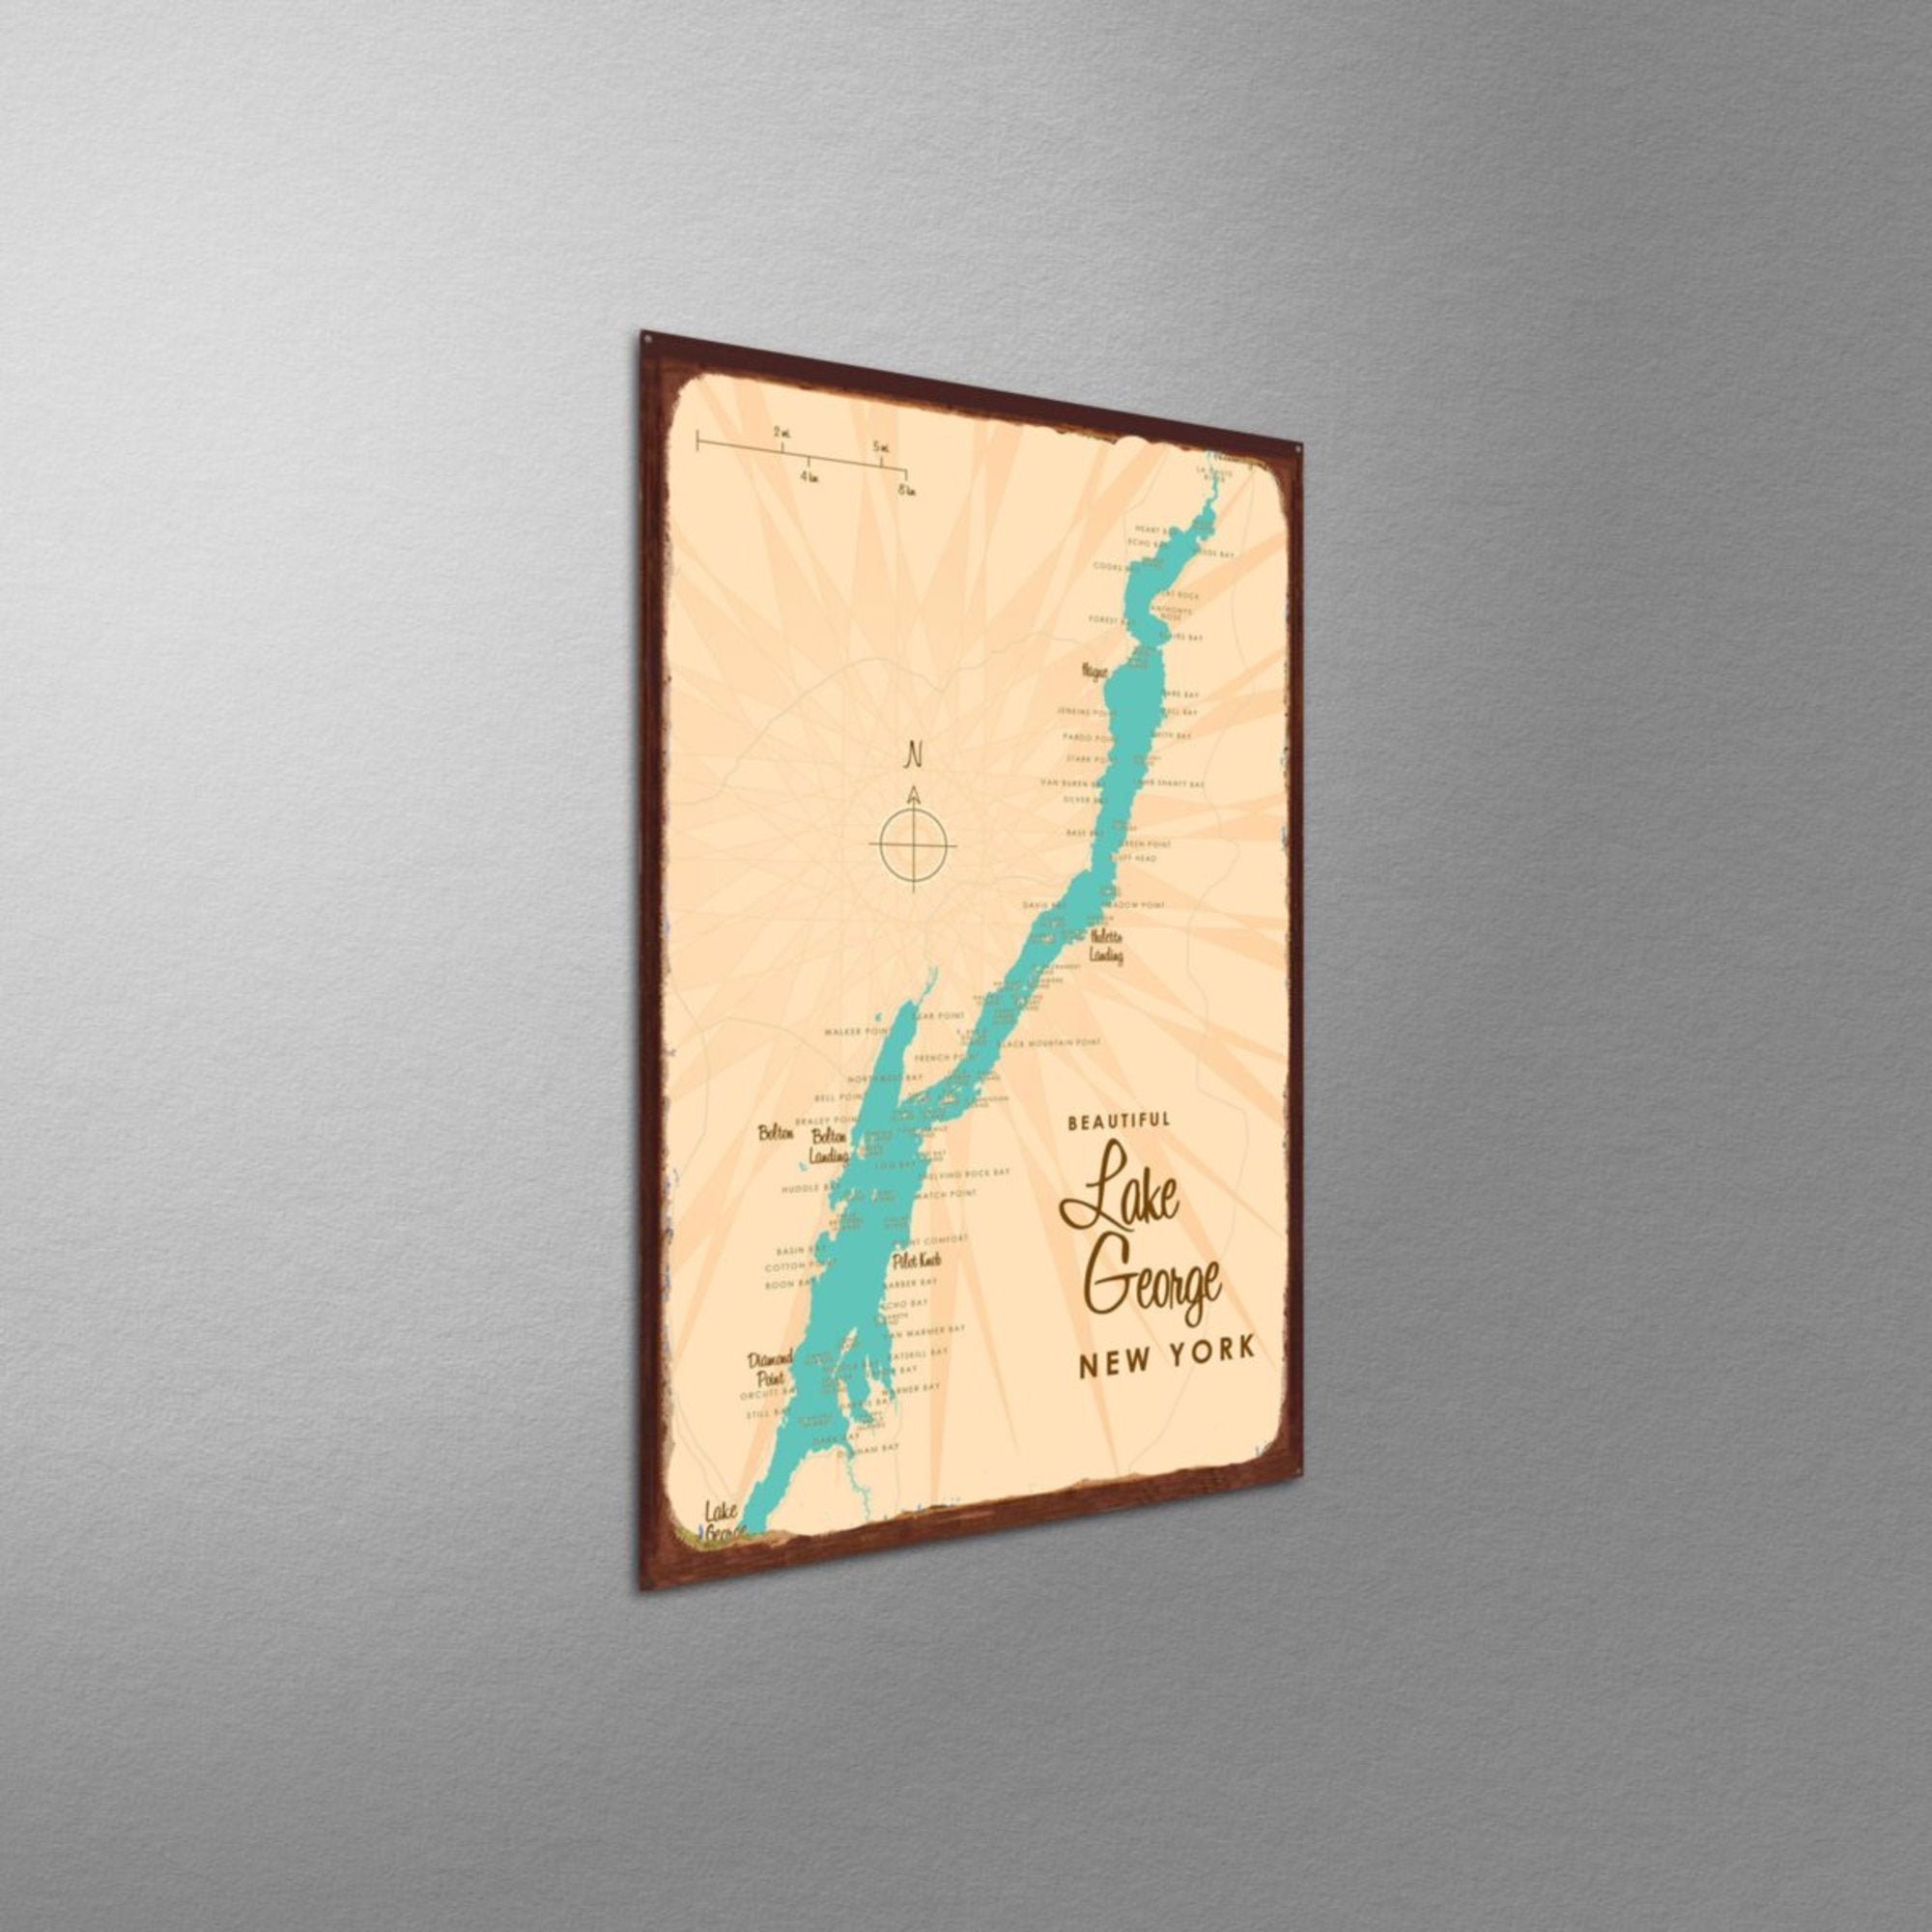 Lake George New York, Rustic Metal Sign Map Art